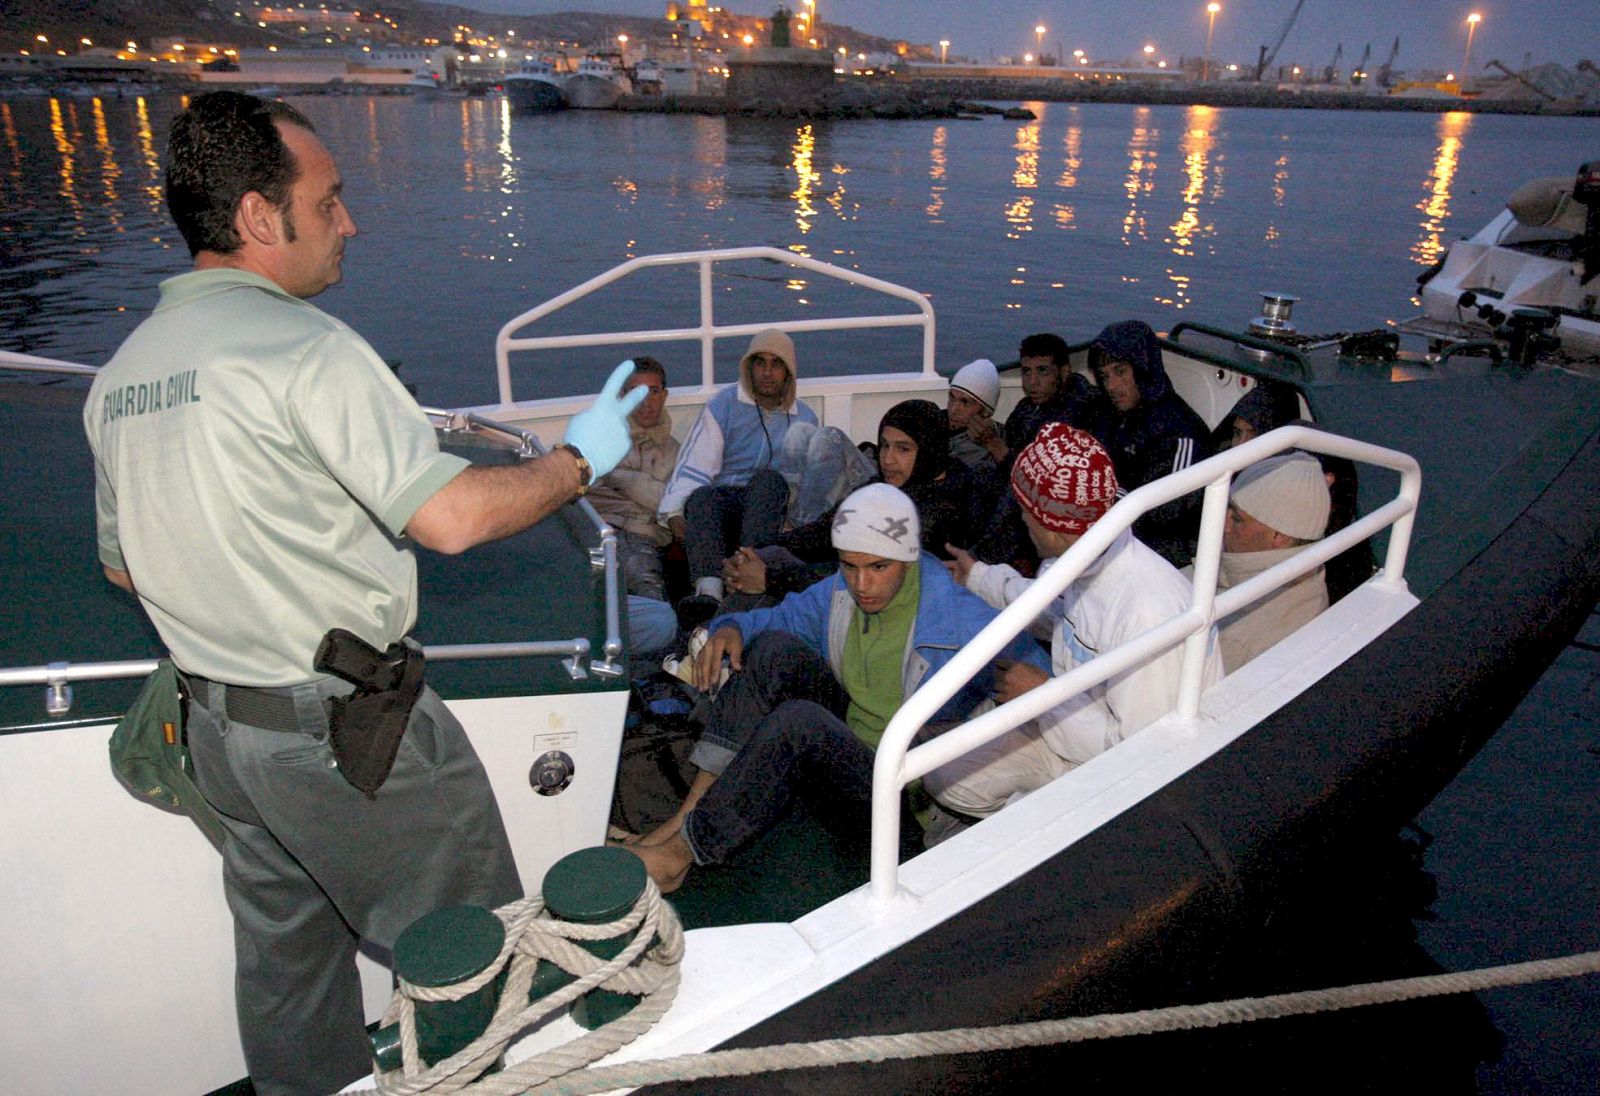 Los once inmigrantes, todos varones, que navegaban en una patera llegan al puerto de Almería después de que la Guardia Civil les intercepatara a 20 millas al sur del Cabo de Gata.